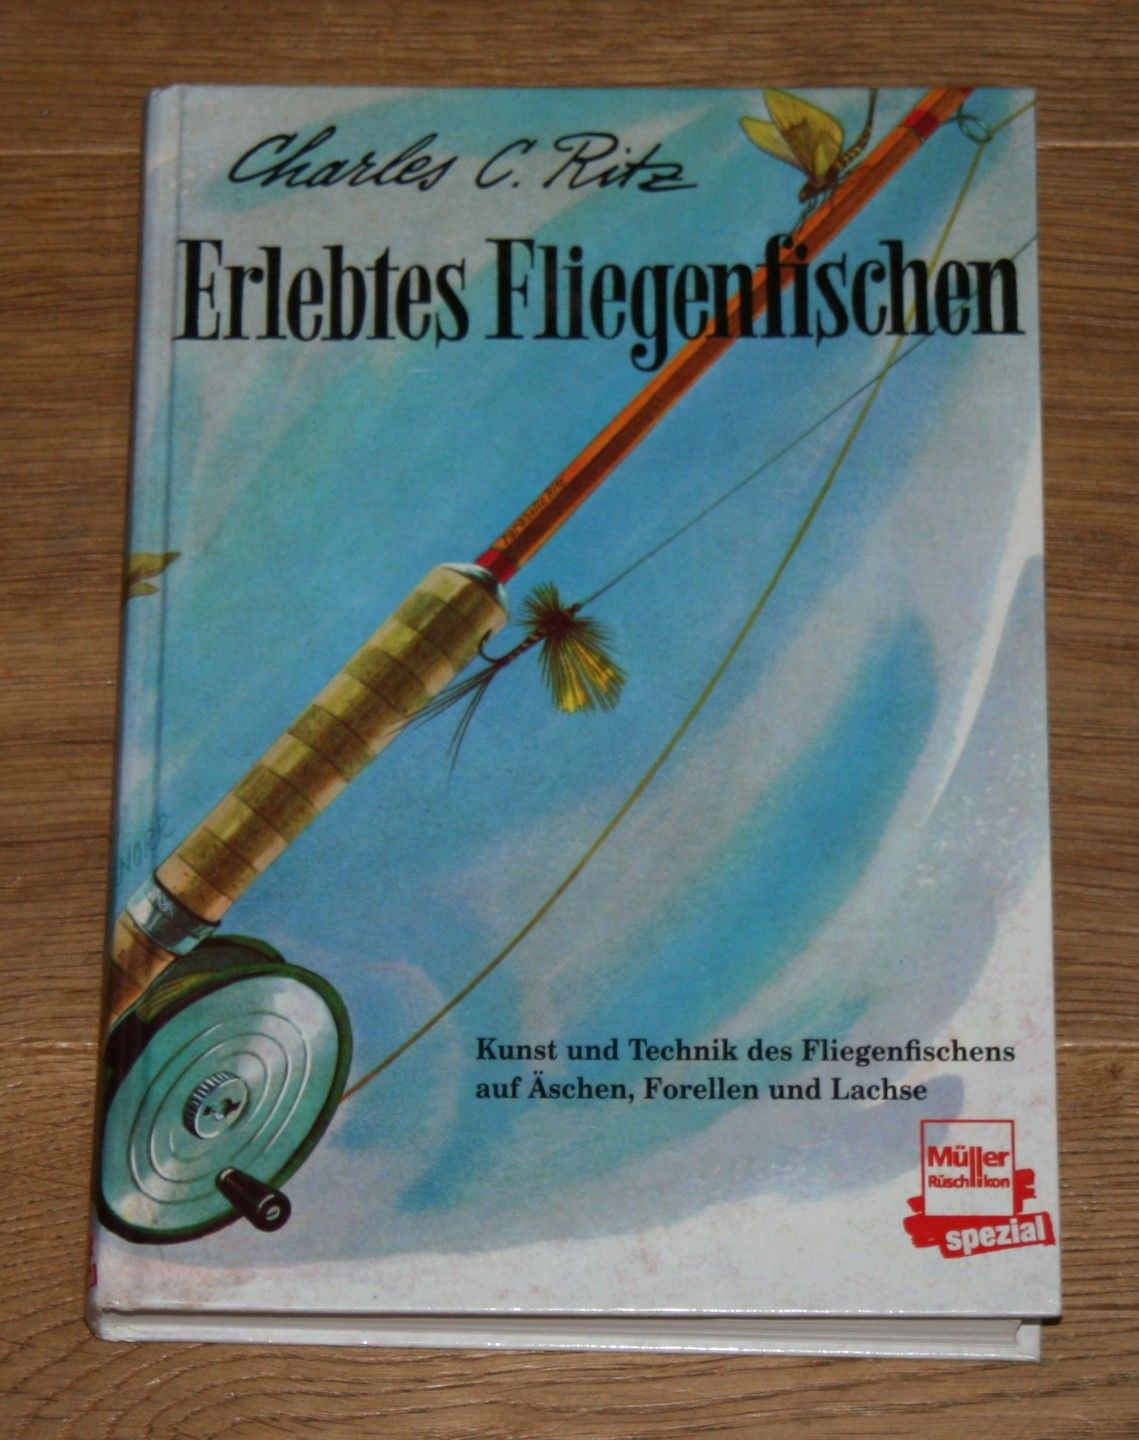 Erlebtes Fliegenfischen. Kunst und Technik des Fliegenfischens auf Äschen, Forellen und Lachse. - Ritz, Charles C. und Ernest Hemingway